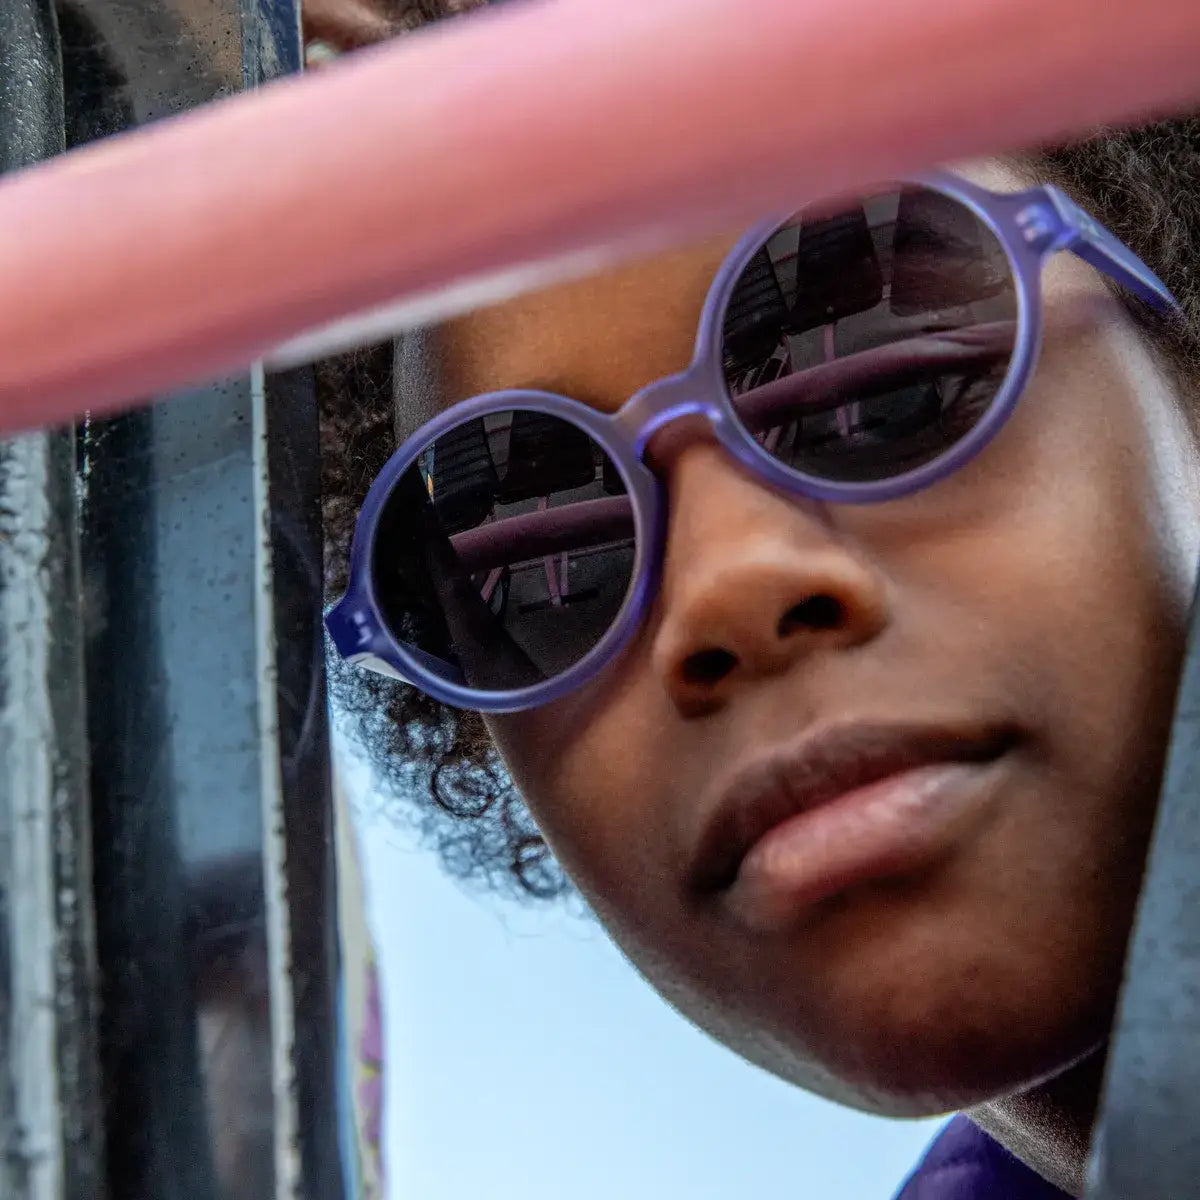 adolescente portant lunette de soleil violette